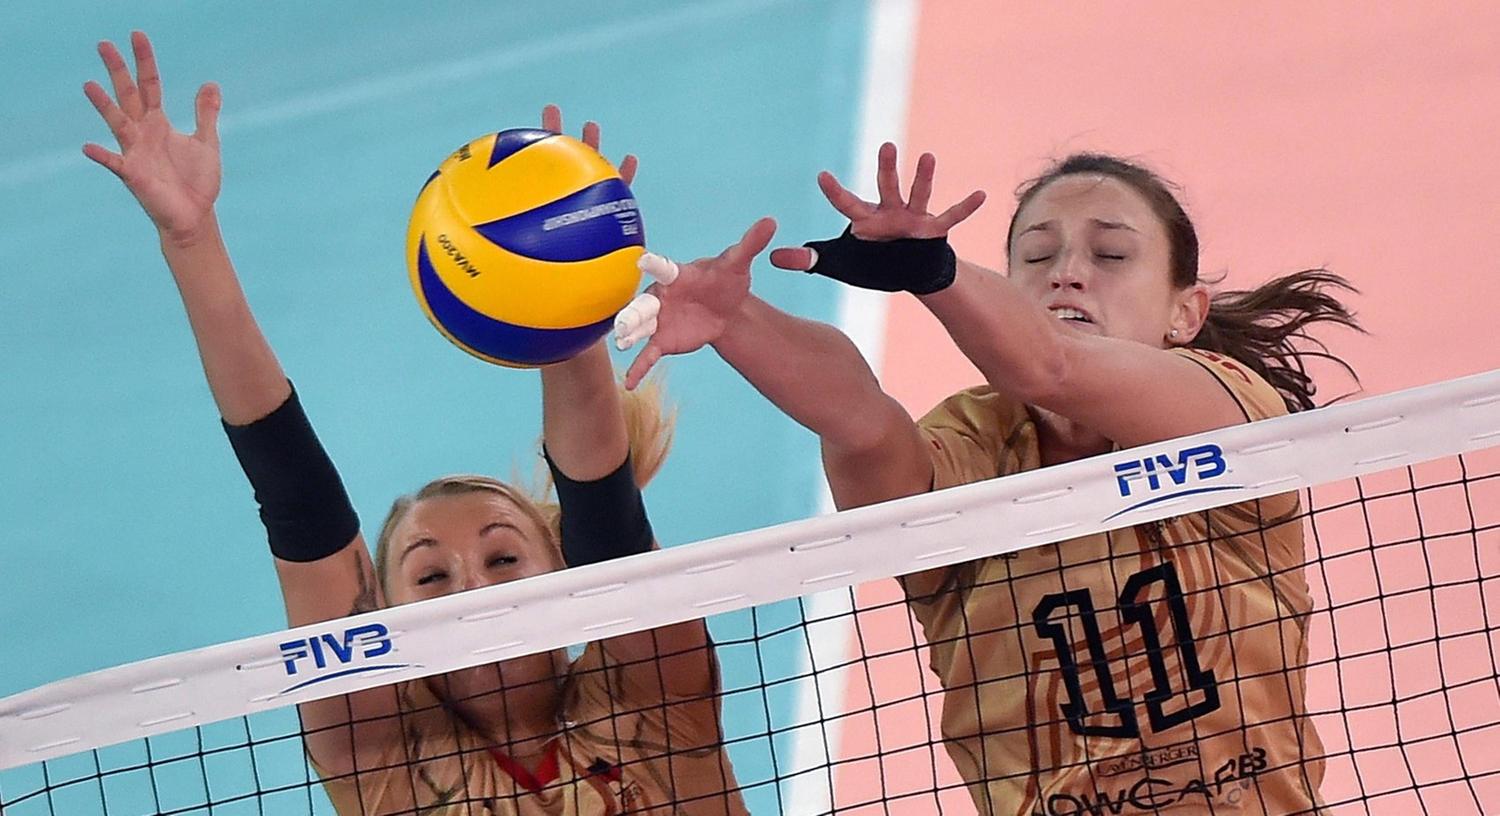 Die deutschen Volleyballerinnen befinden sich nach der Niederlage gegen China weiterhin im Abwärtstrend.